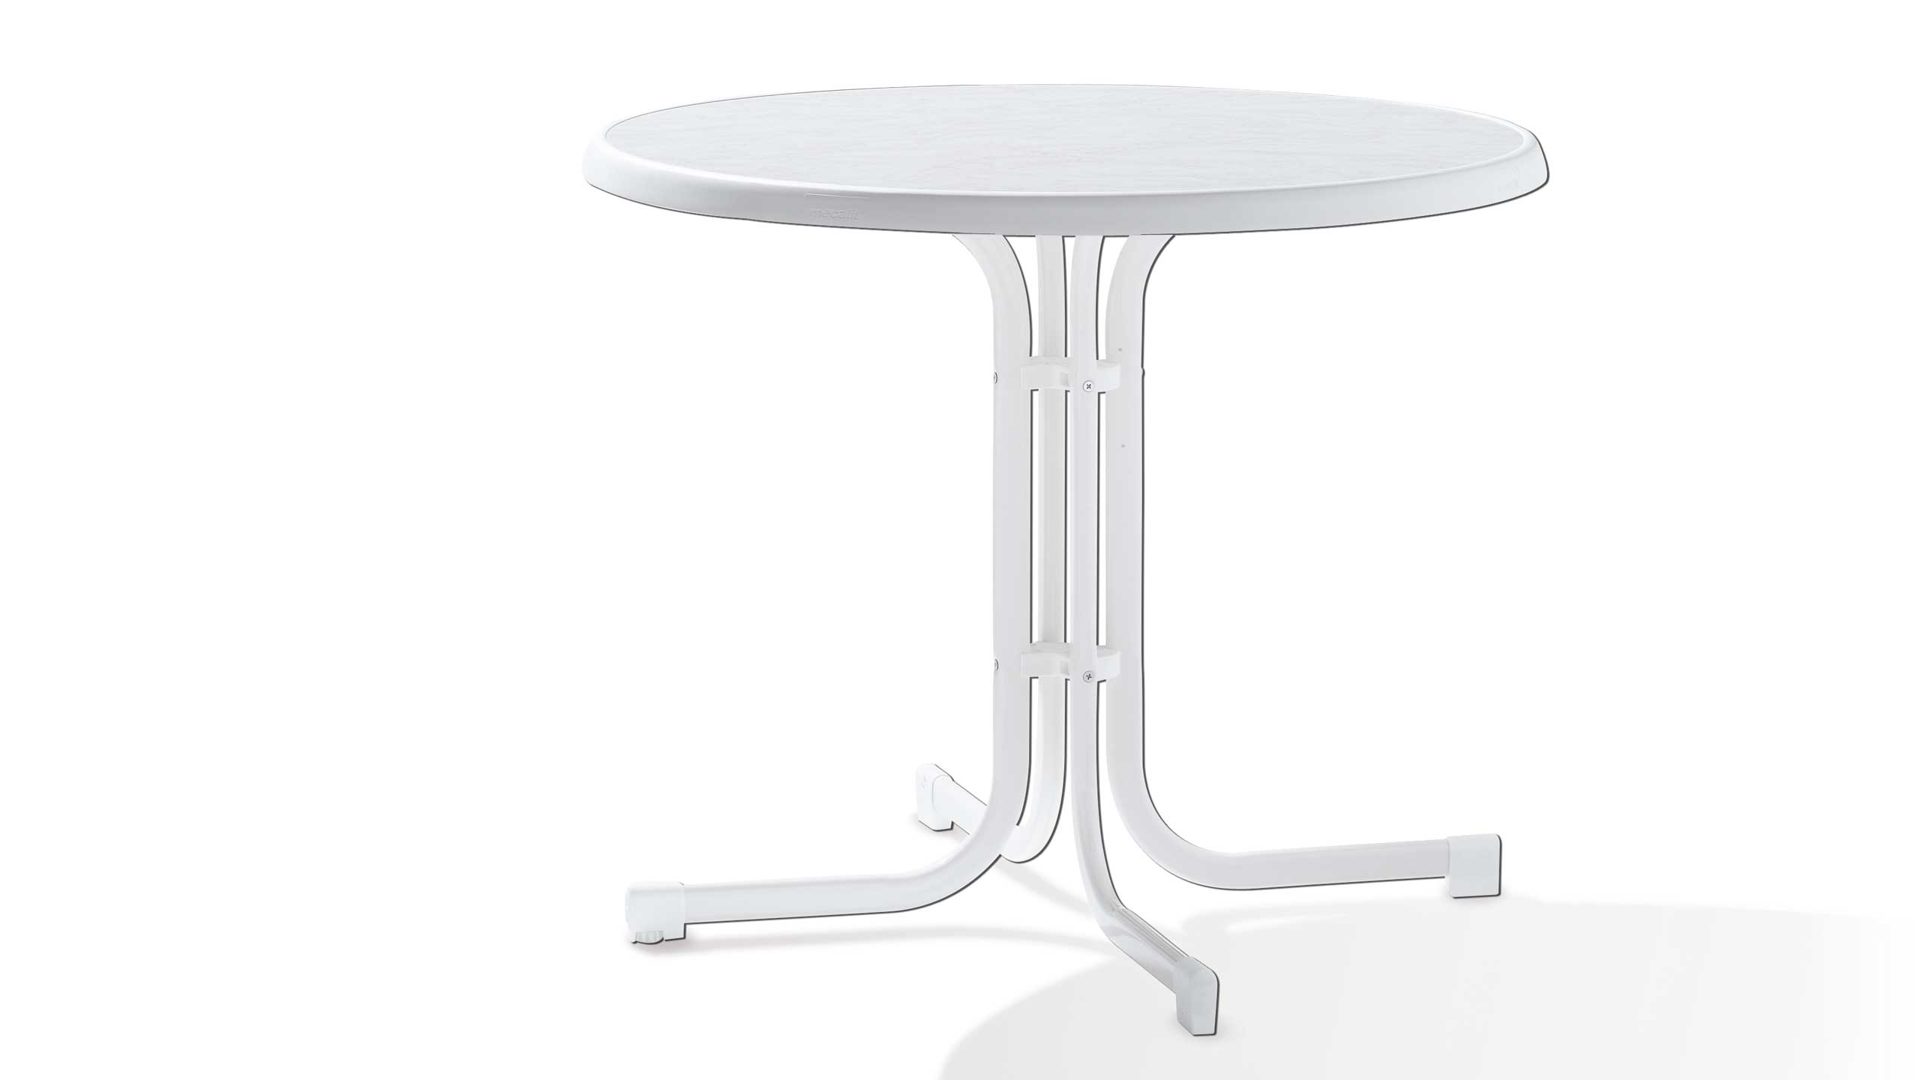 Gartentisch Sieger in Weiß Sieger Klapptisch Gartentisch Tischplatte Mecalit D.: 86 cm Gestell Stahlrohr, Tischplatte Mecalit Weiss